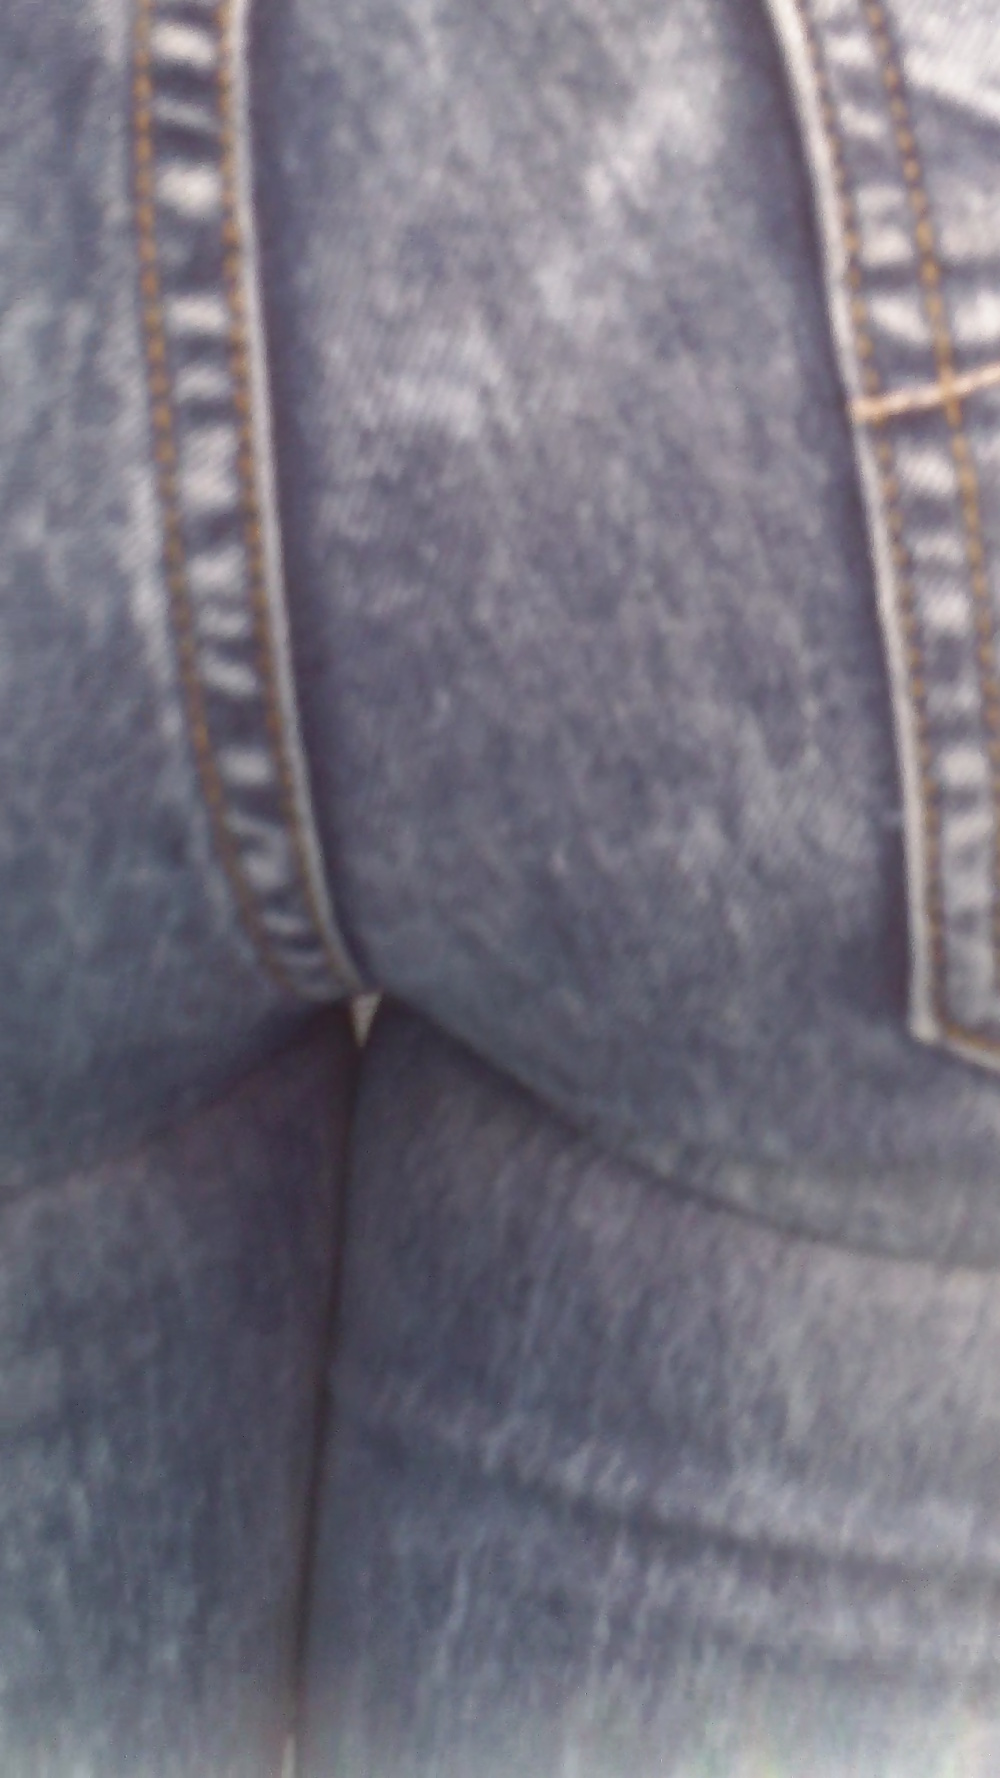 Popular teen girls ass & butt in jeans part 4  #26743318